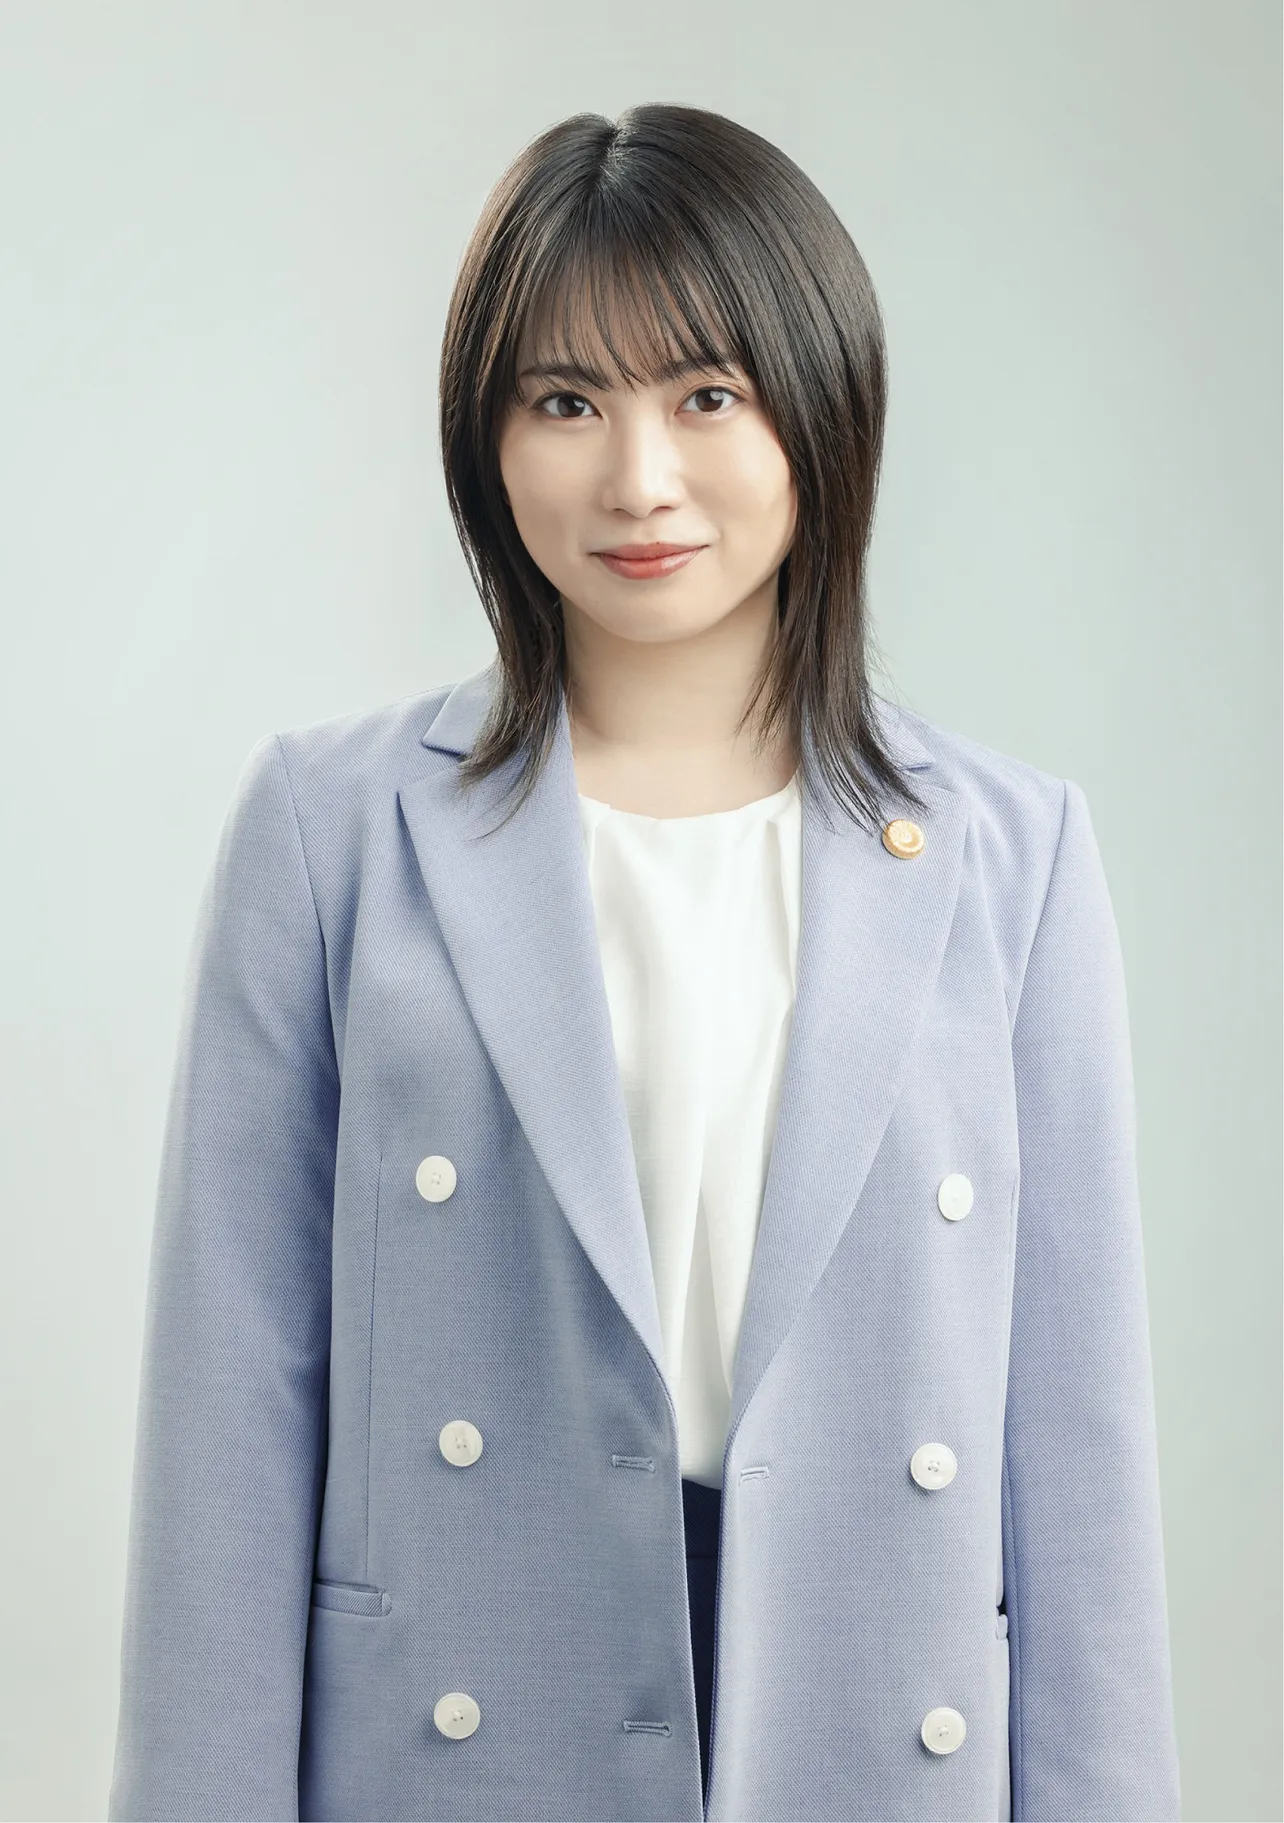 トラウマを抱えた女性弁護士・神楽蘭を演じる志田未来は、「20代最後の作品として、今作に参加させていただけることがとても光栄です」と意気込みを